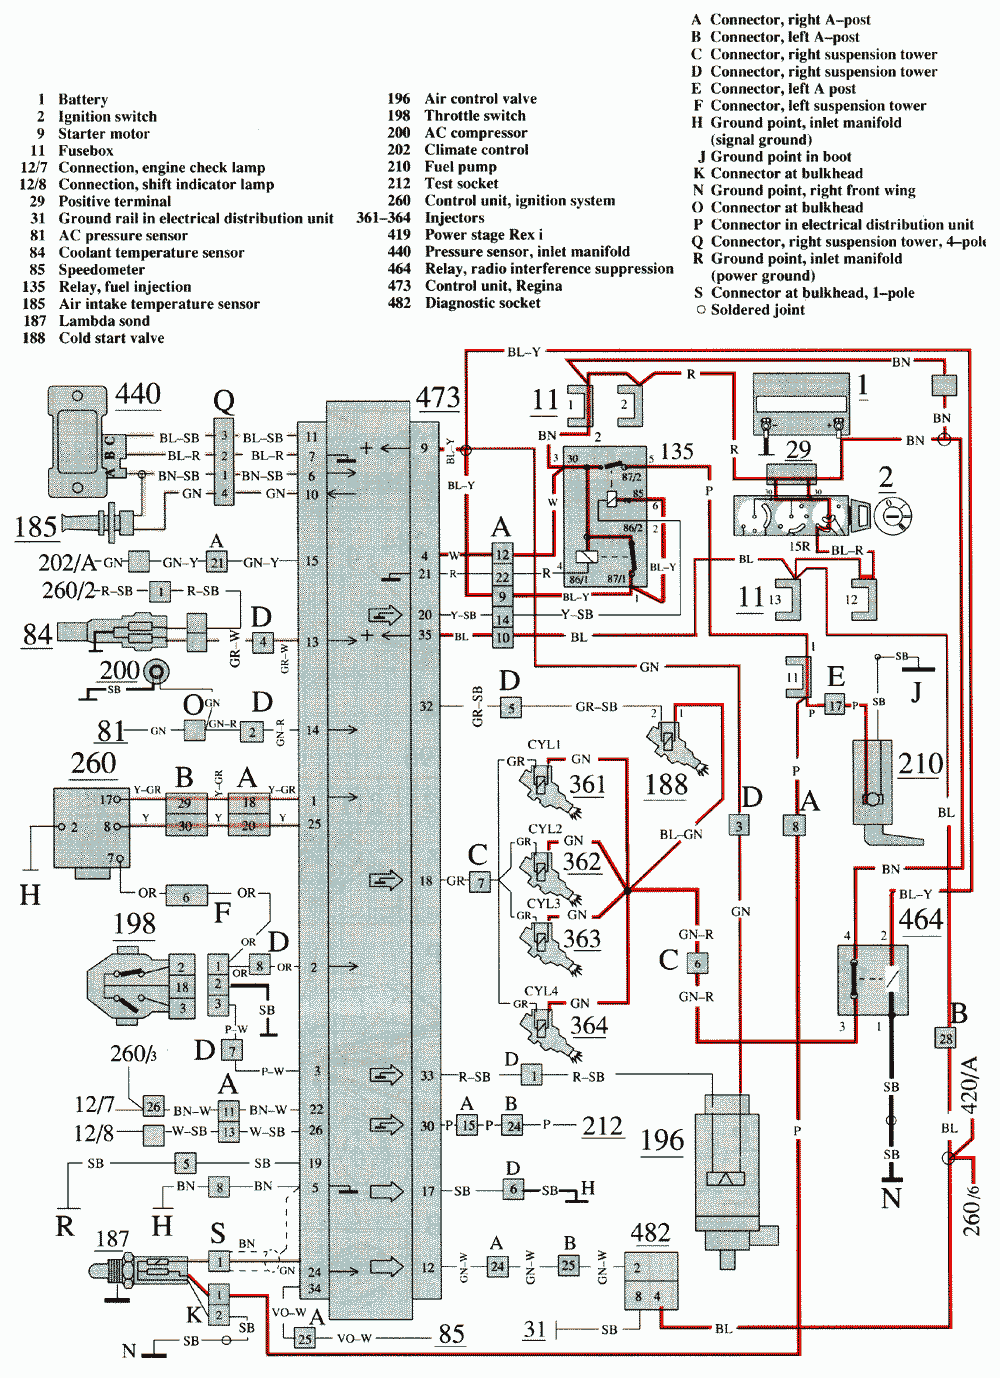 Ac Compressor Schematic - Wiring Diagram Networks